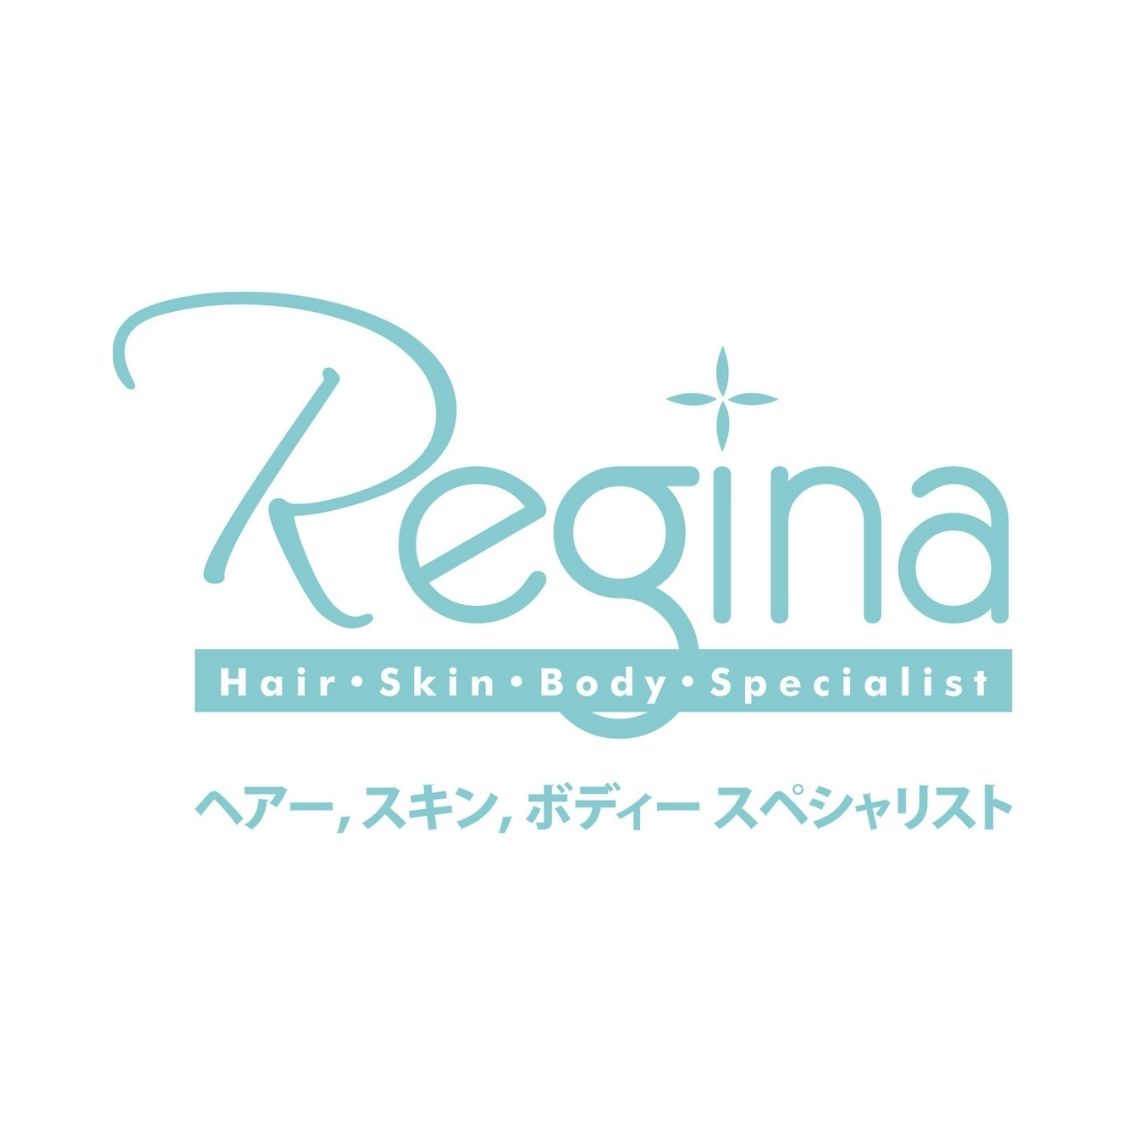 Regina Logo.jpg